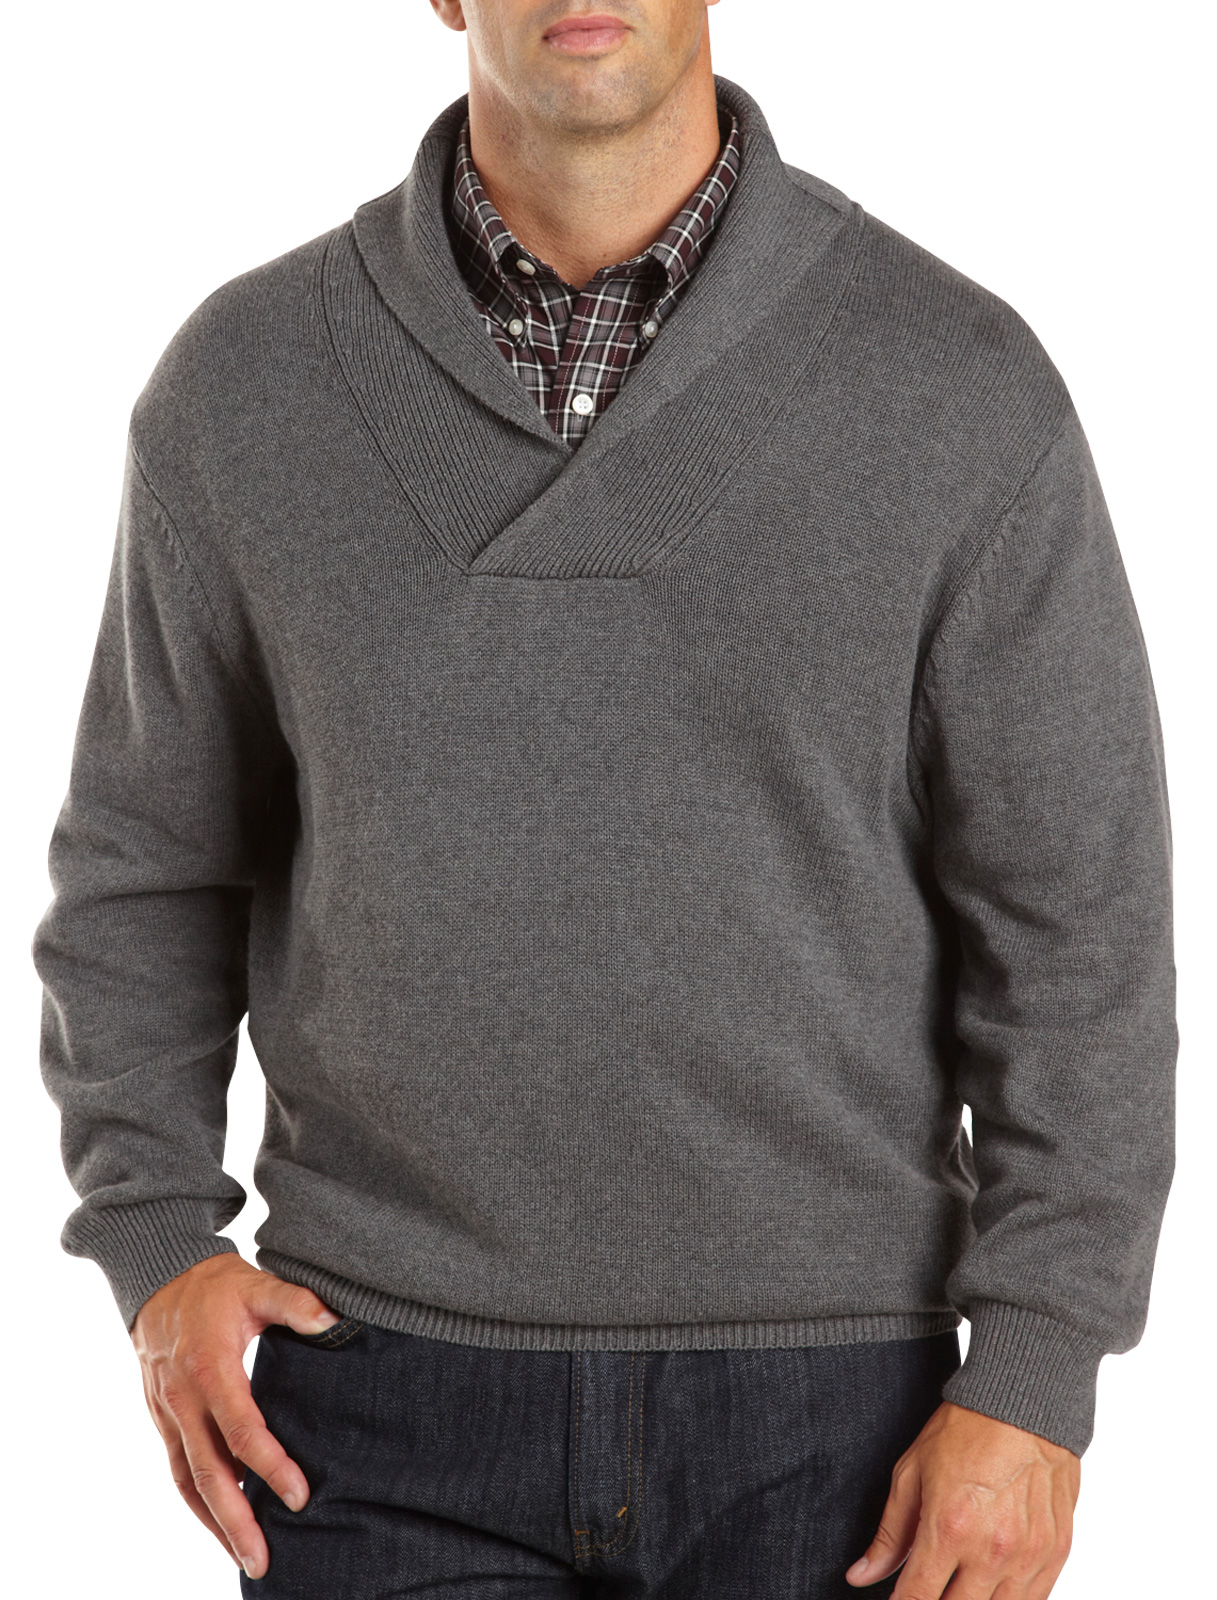 Oak Hill Shawl-Collar Sweater